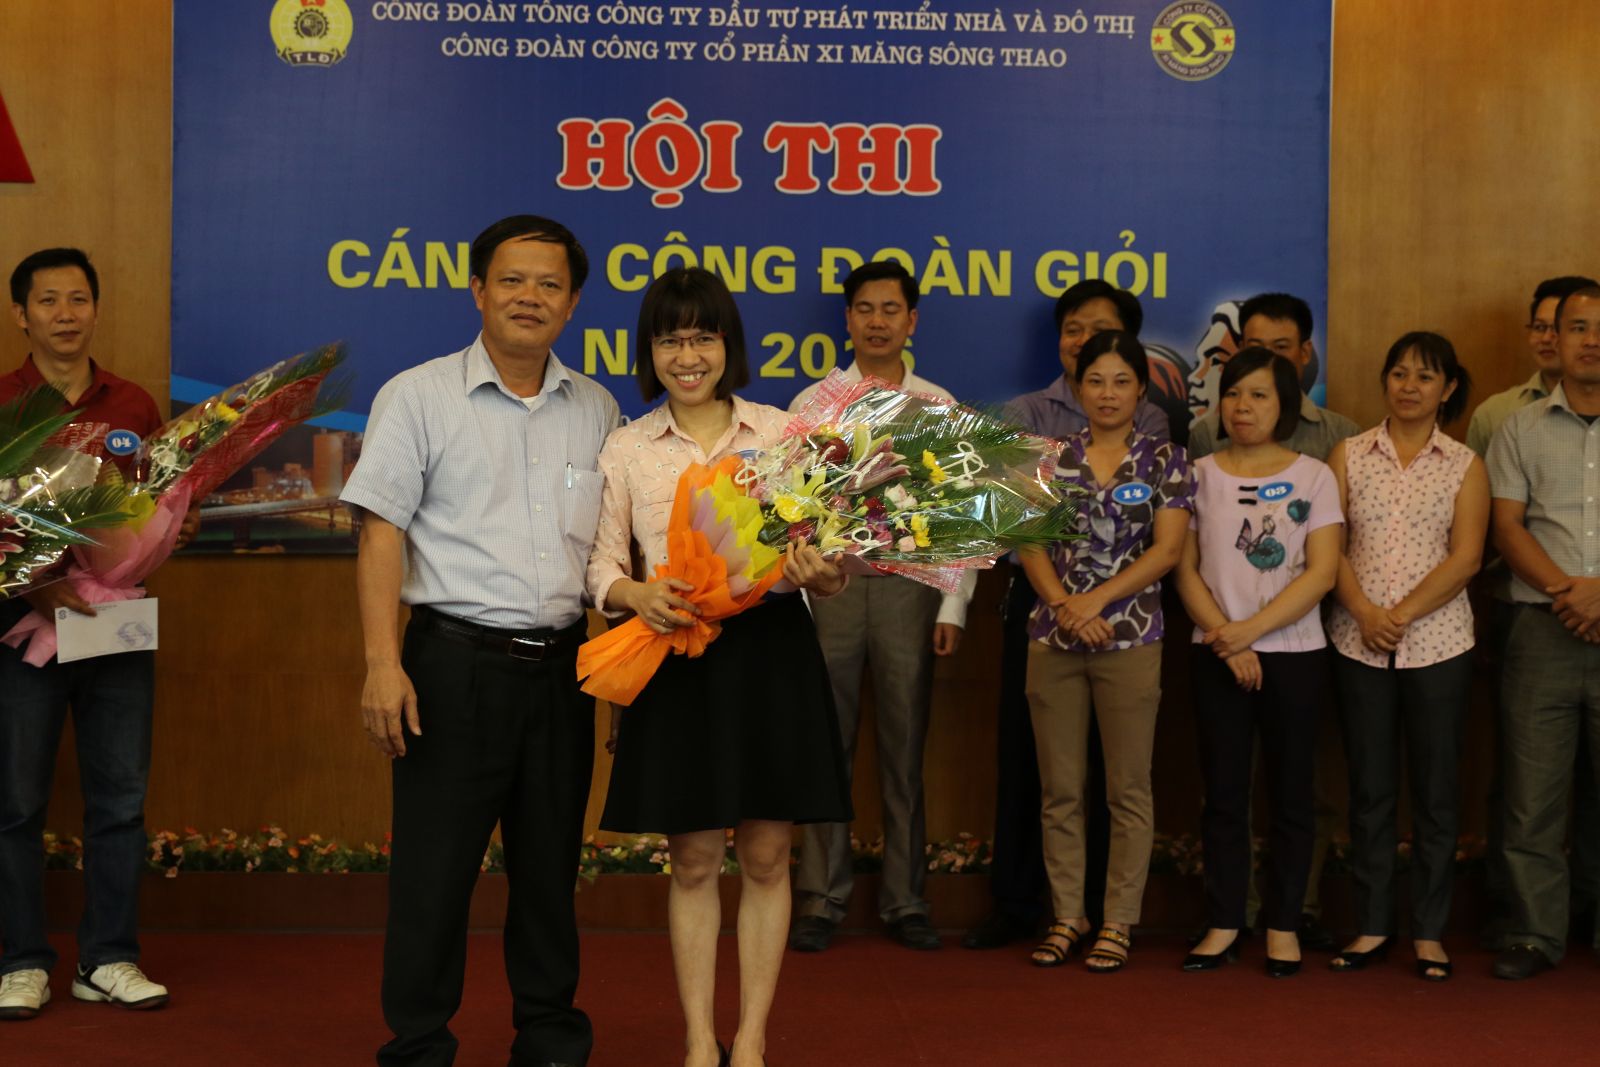 Đ/c Triệu Quang Công, Chủ tịch Công đoàn, Trưởng BTC hội thi trao giải cho thí sinh đạt giải nhất